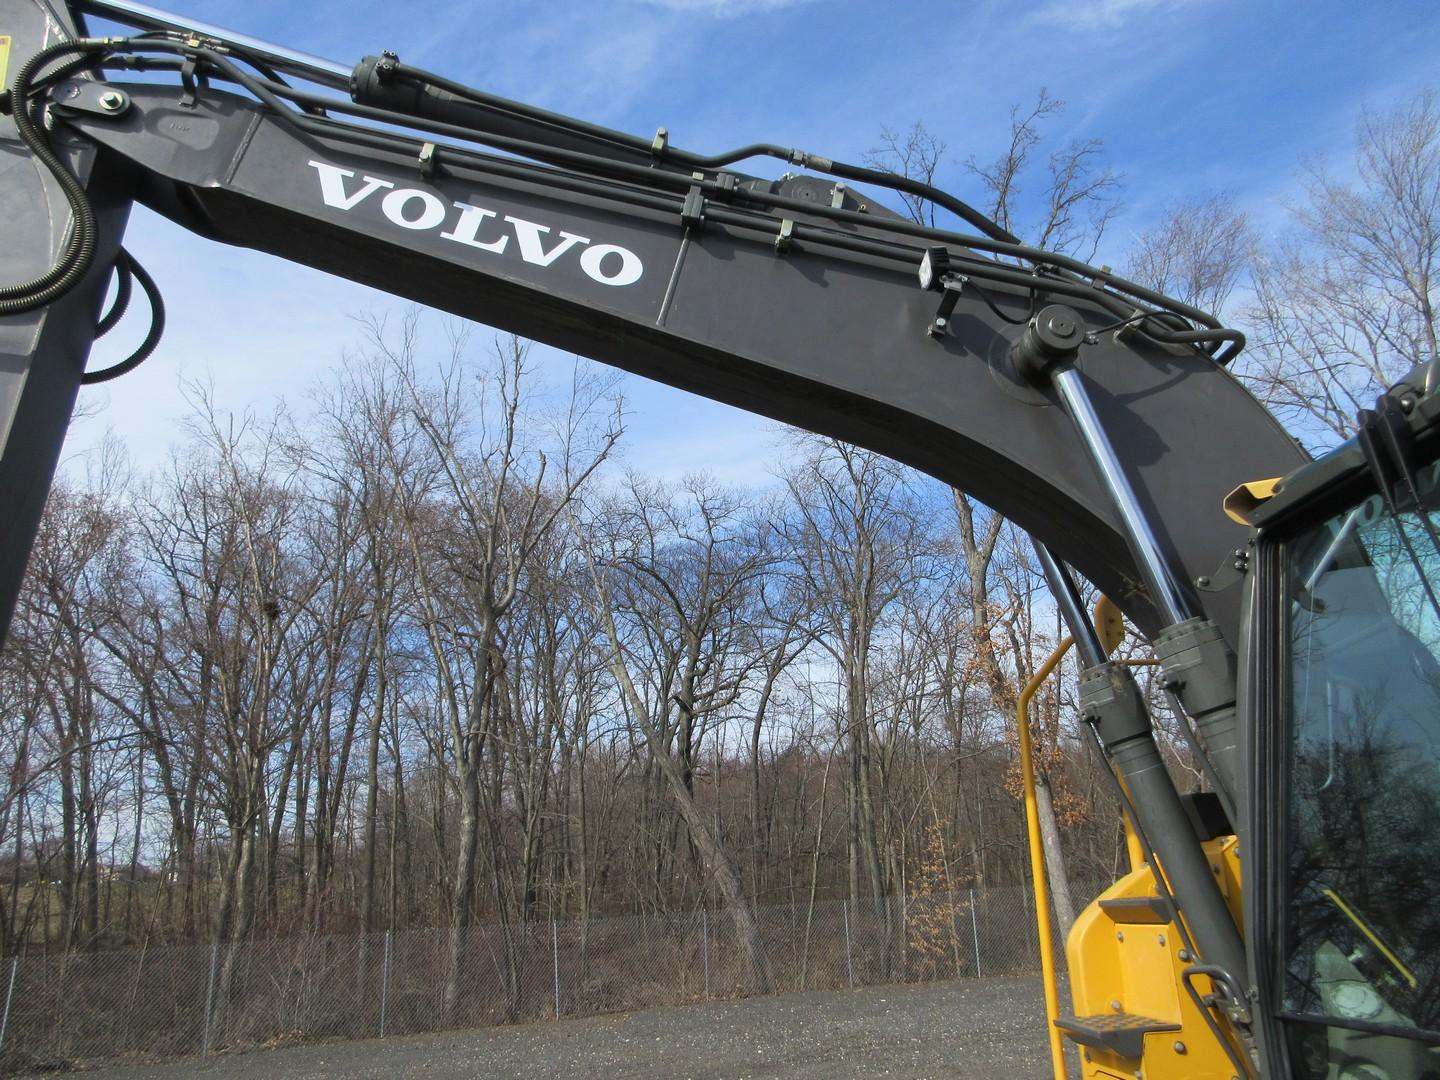 2016 Volvo ECR145EL Hydraulic Excavator